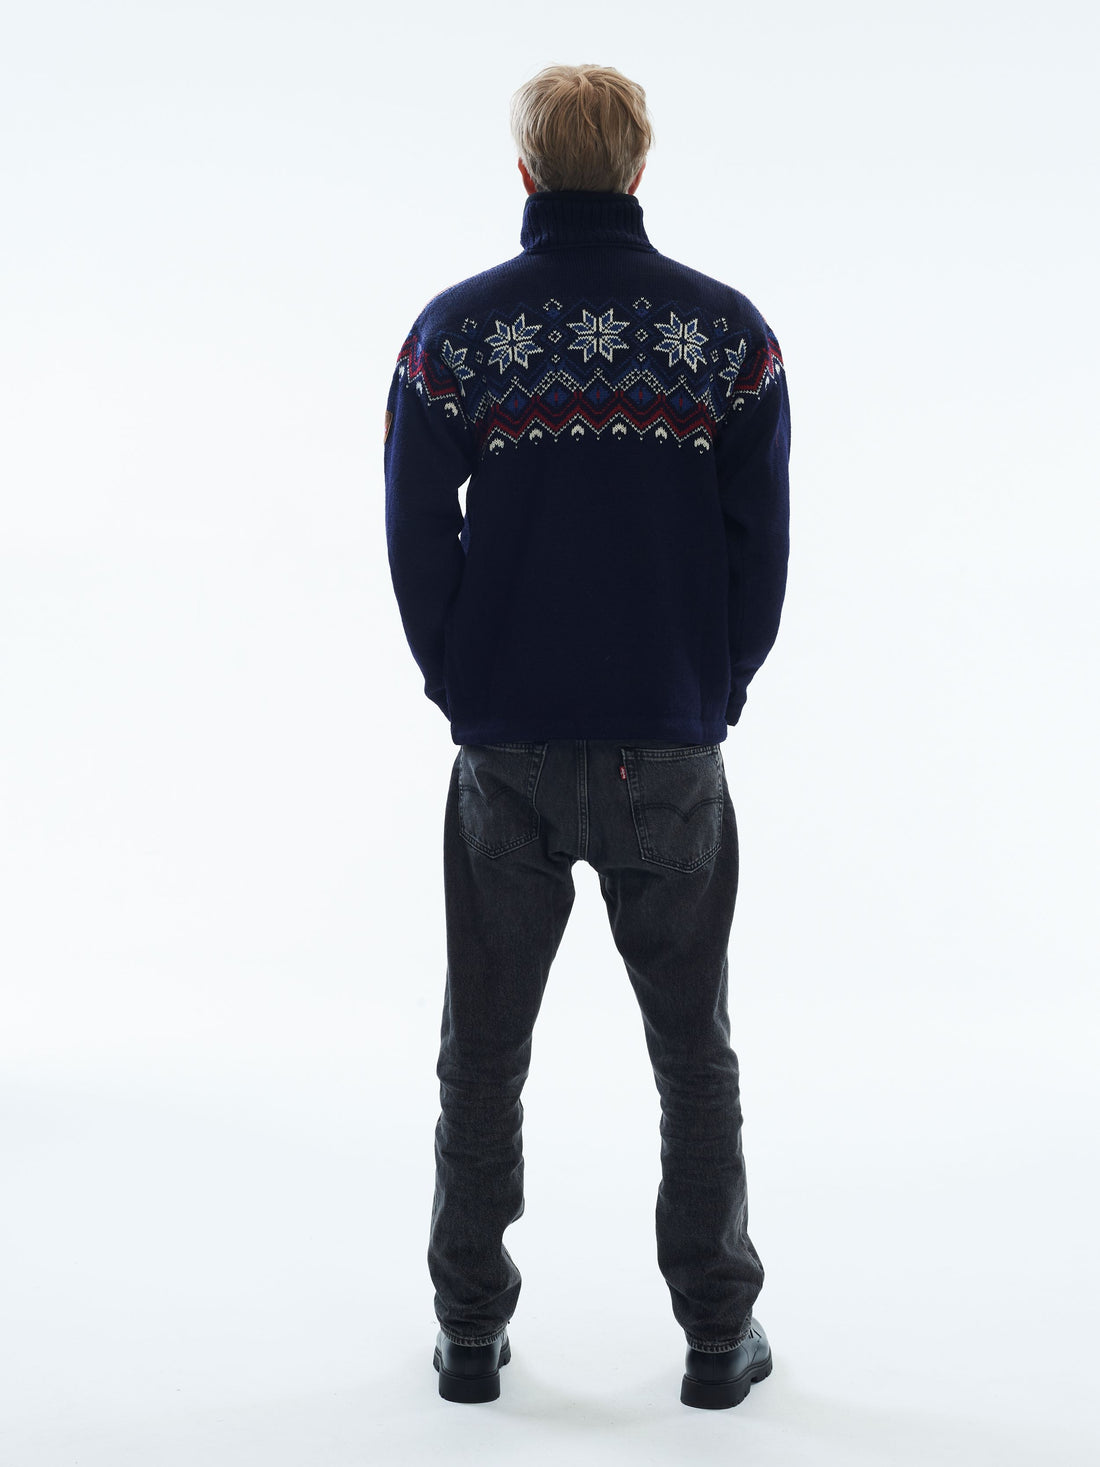 Dale of Norway - Fongen Weatherproof Men's Sweater - Navy